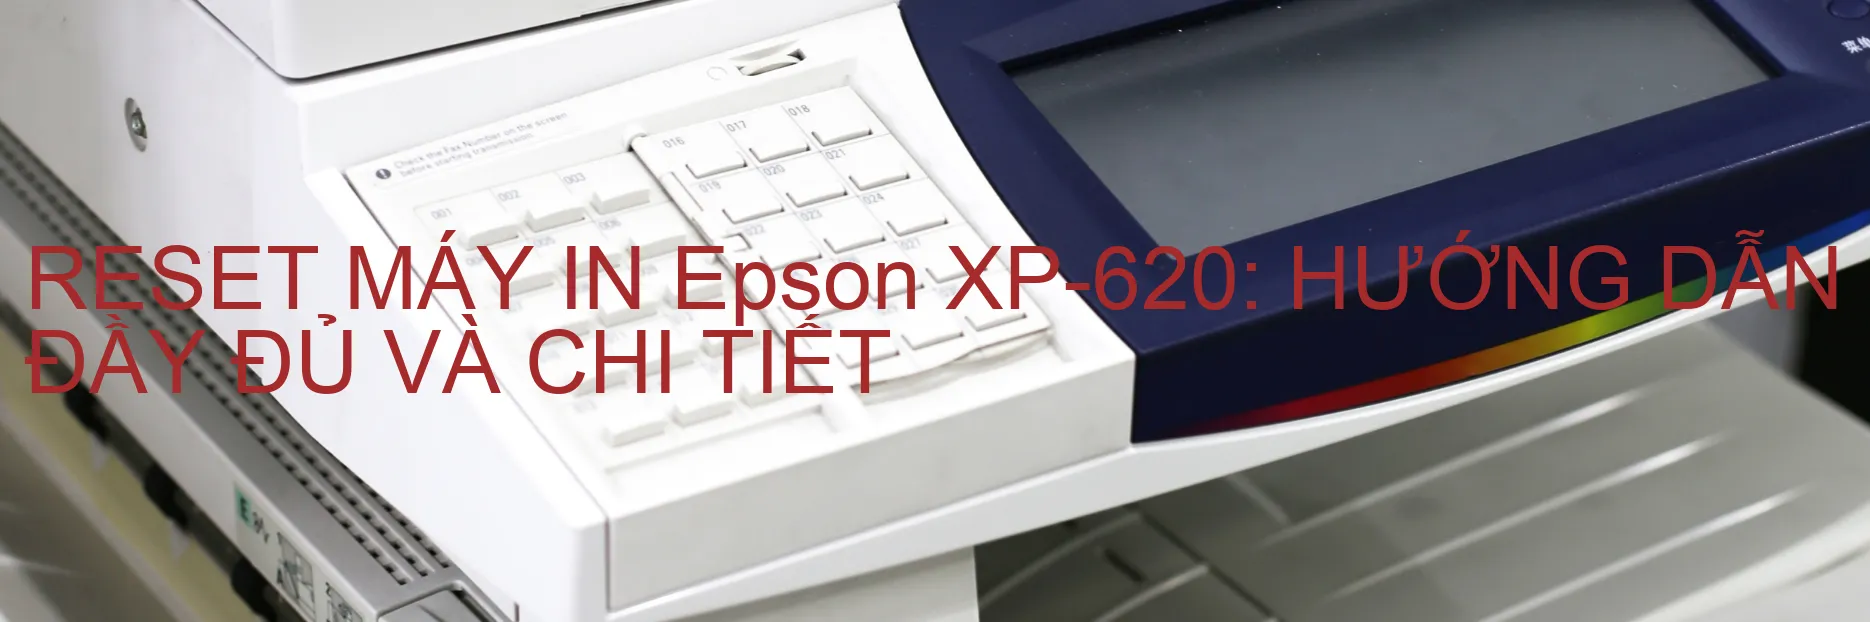 Reset MÁy In Epson Xp 620 HƯỚng DẪn ĐẦy ĐỦ VÀ Chi TiẾt Wicreset Utility Việt Nam 0933